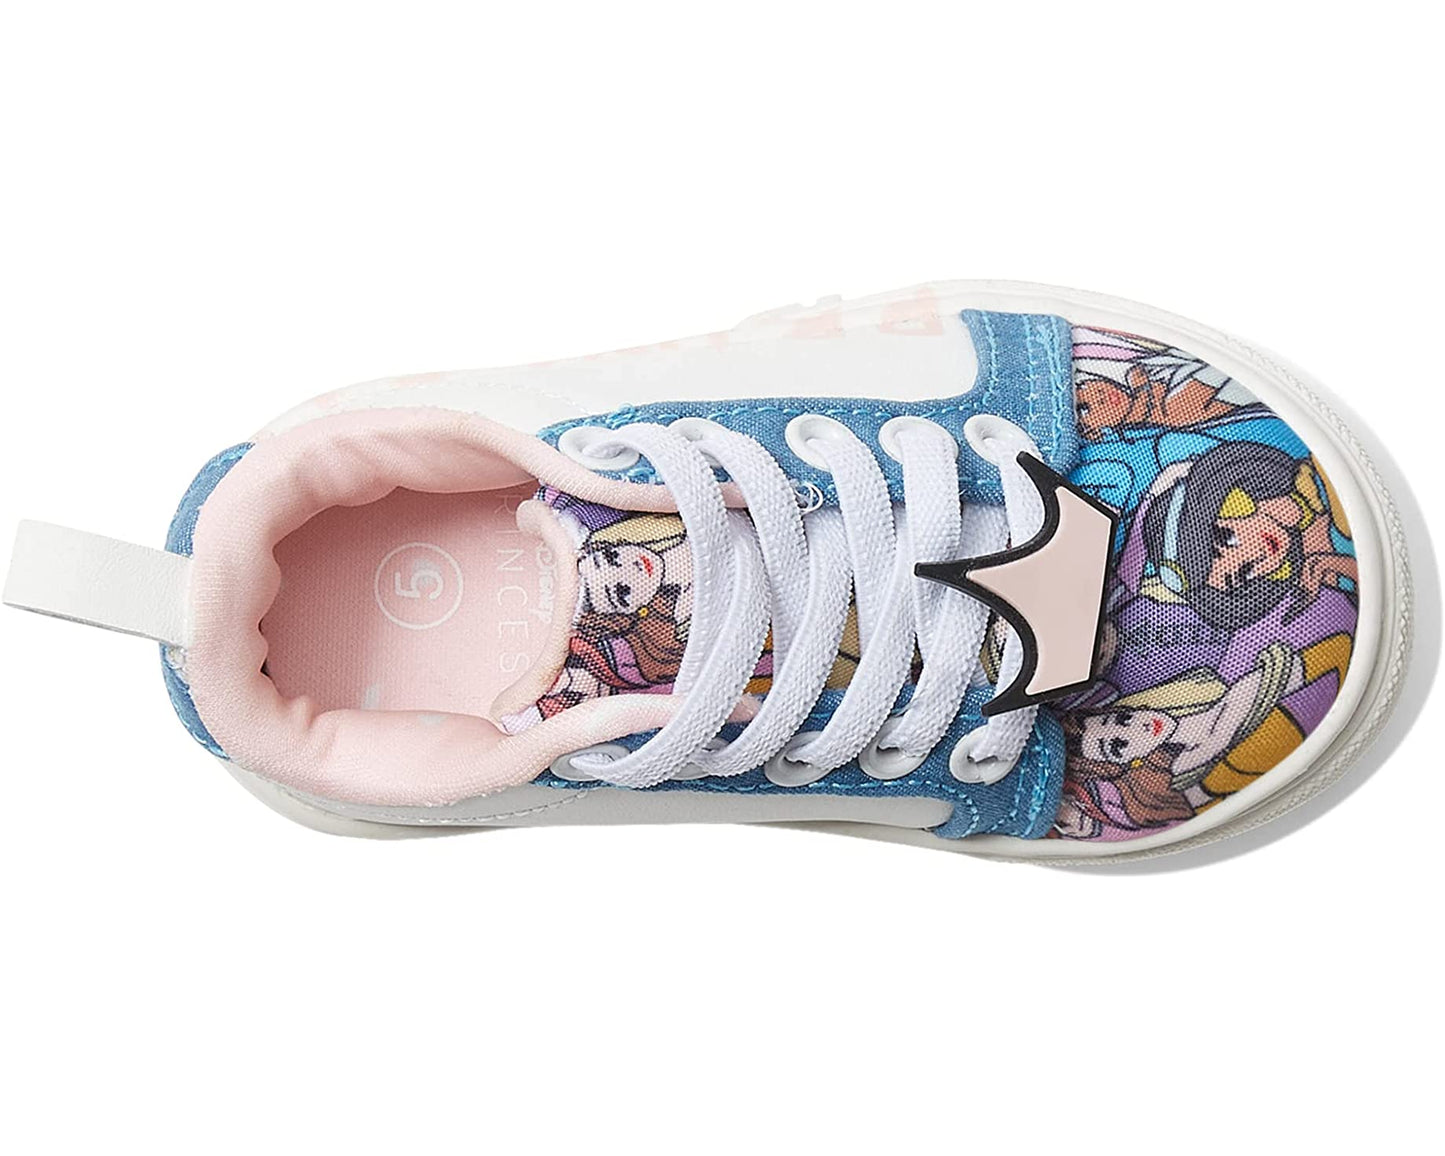 Disney Princess Low Top Sneakers